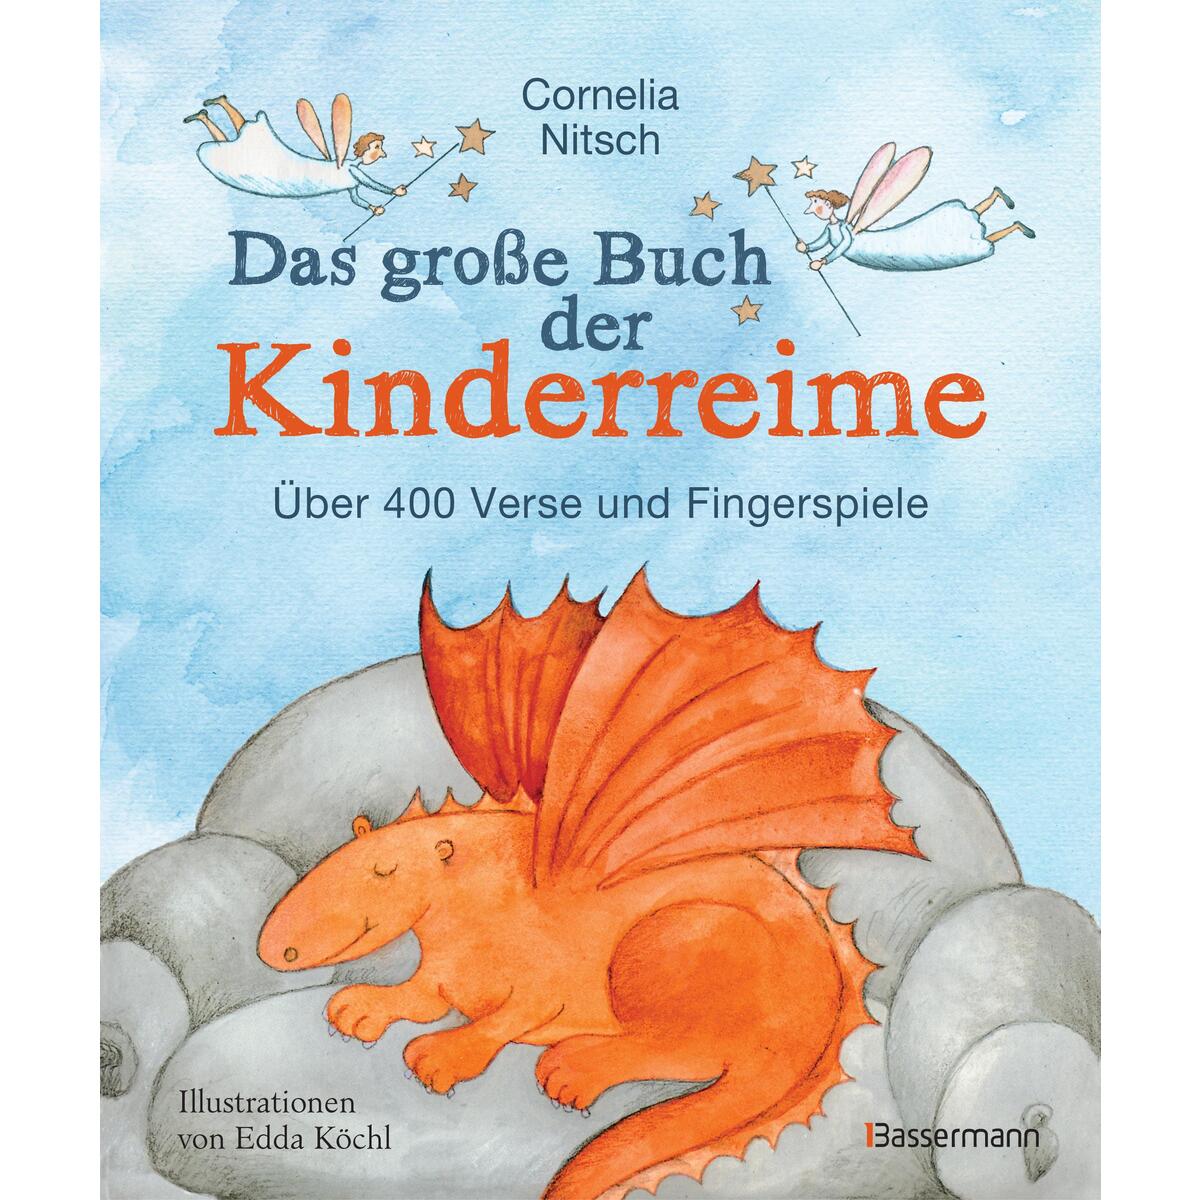 Das große Buch der Kinderreime von Bassermann, Edition